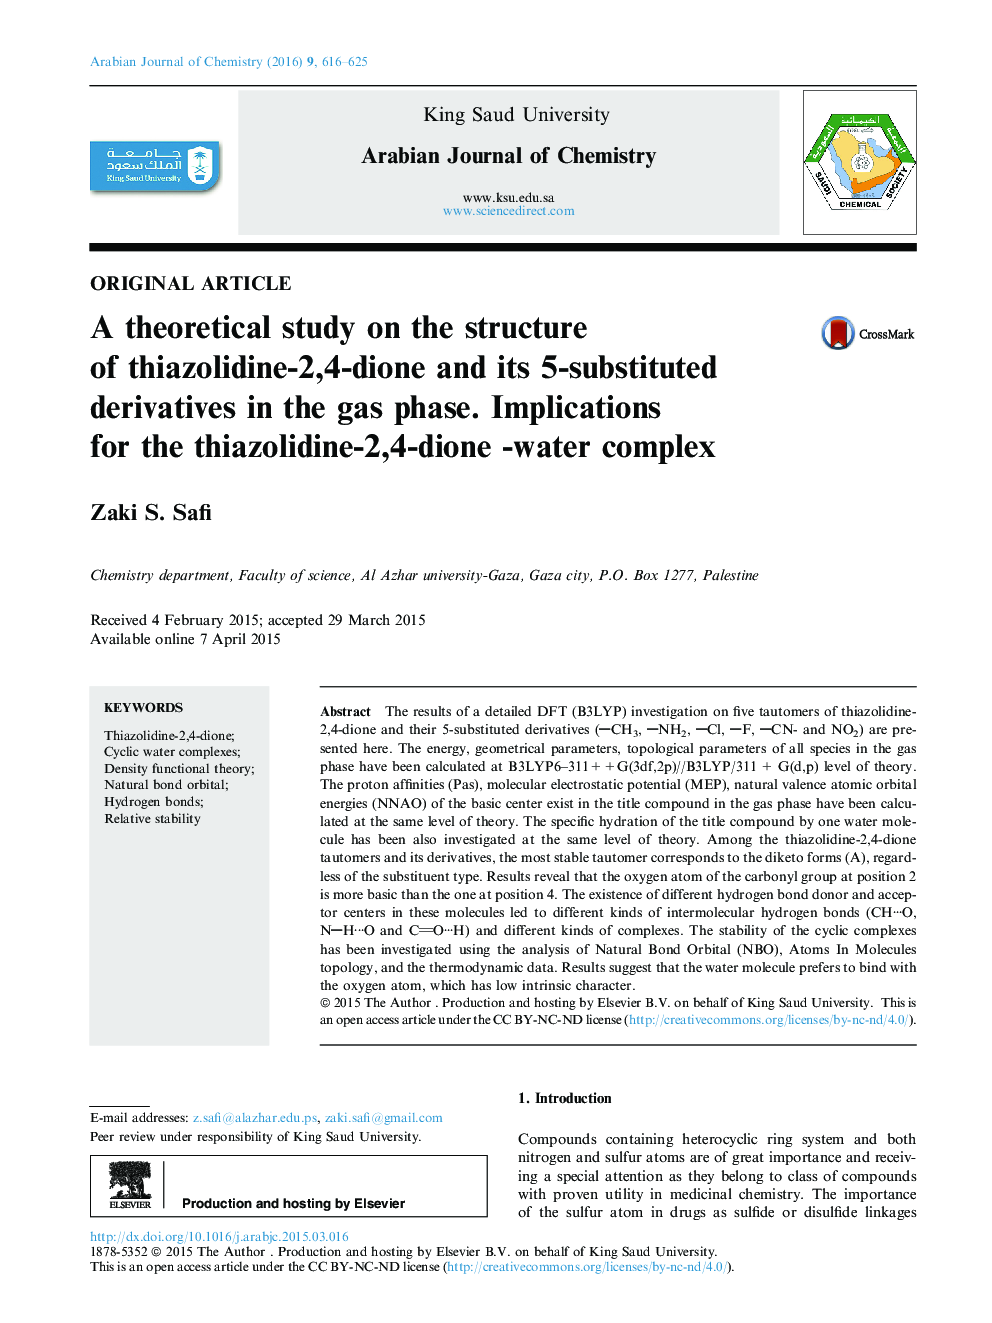 یک مطالعه نظری بر ساختار تیازولیدین-2،4-دیون و مشتقات 5-جایگزین آن در فاز گاز. اثرات جانبی برای تیتازولیدین-2،4-دیون-آب مجتمع 